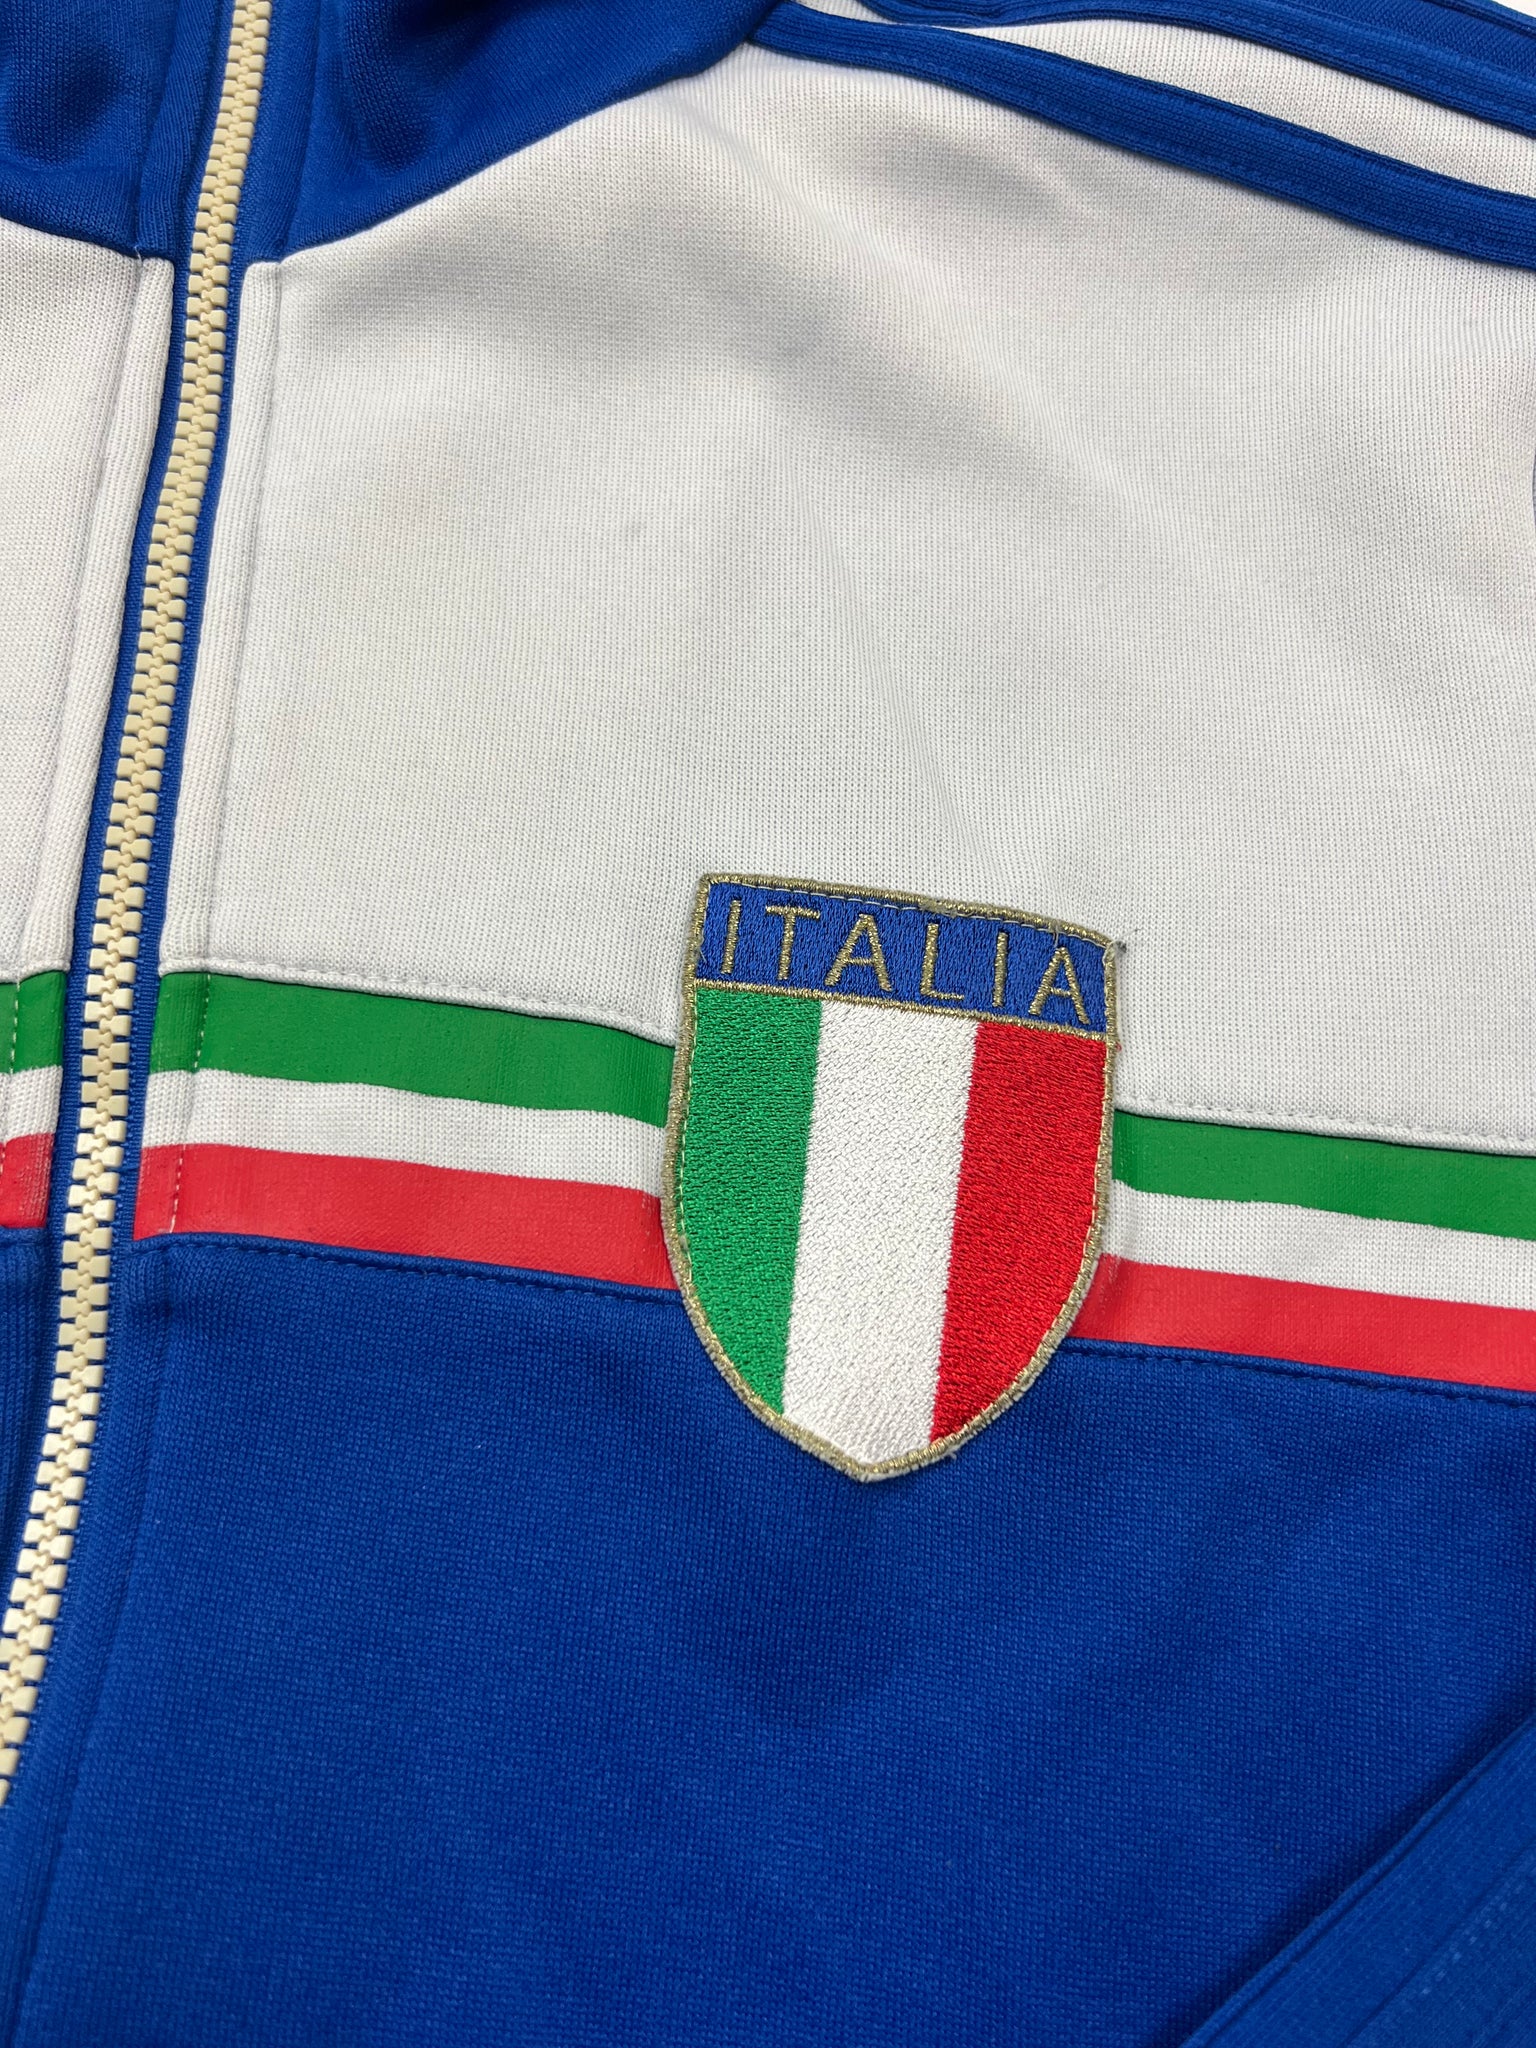 Adidas Italia Track Jacket (S)